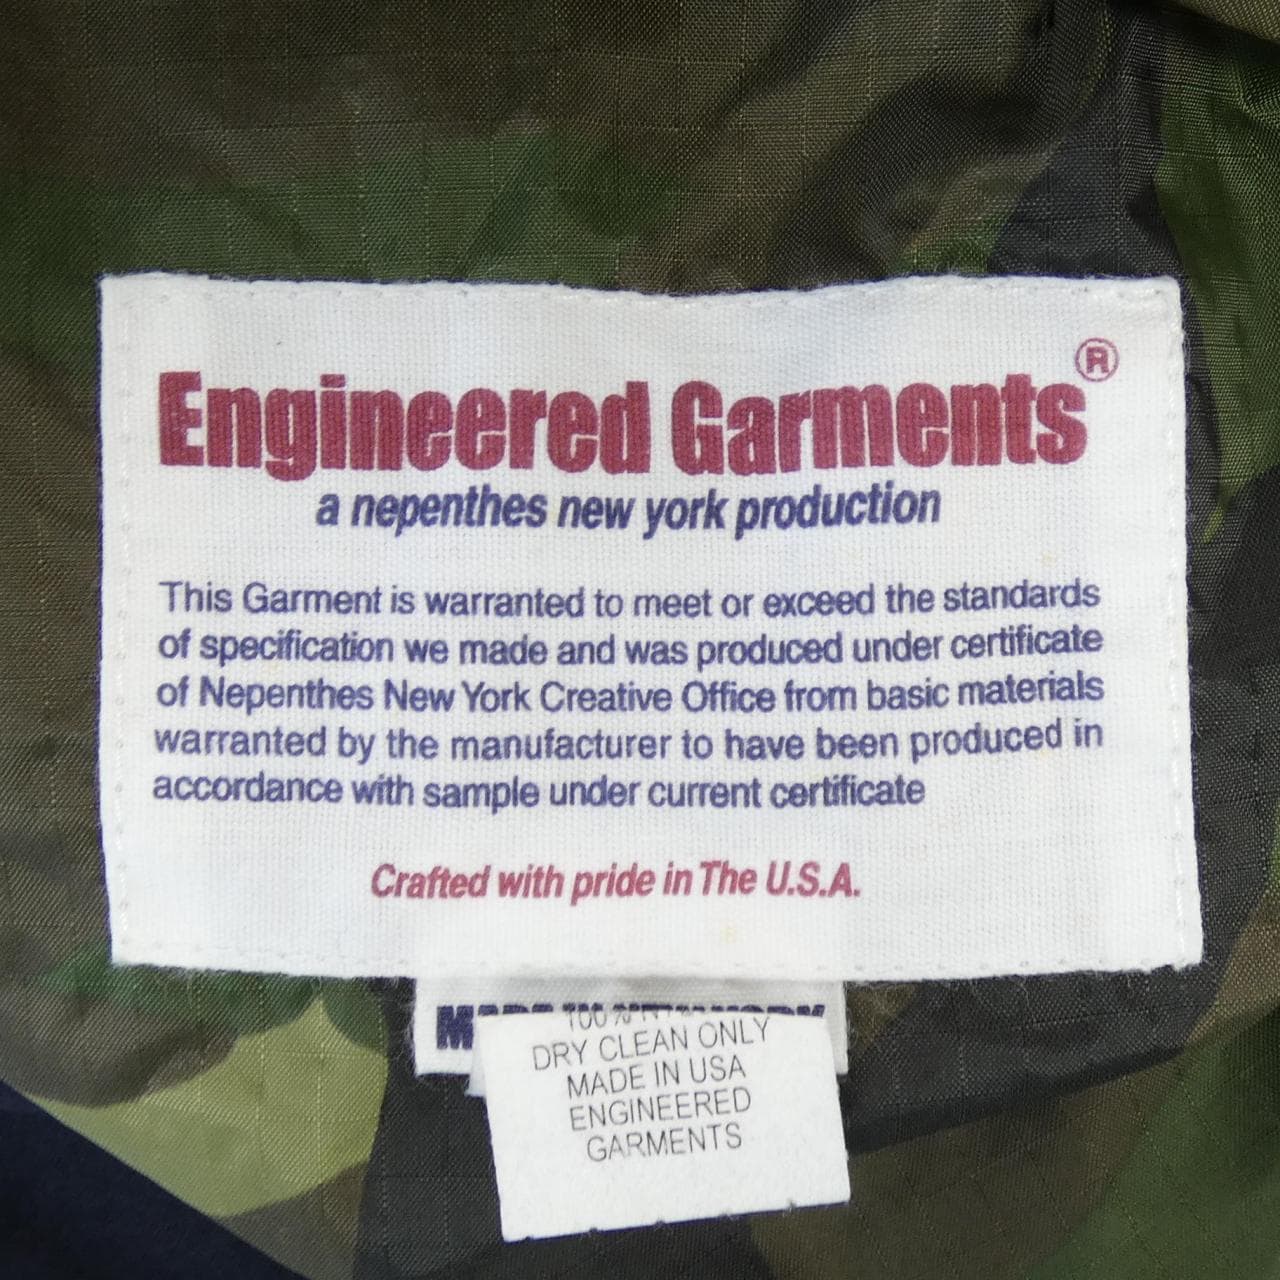 エンジニアードガーメンツ ENGINEERED GARMENTS ジャケット